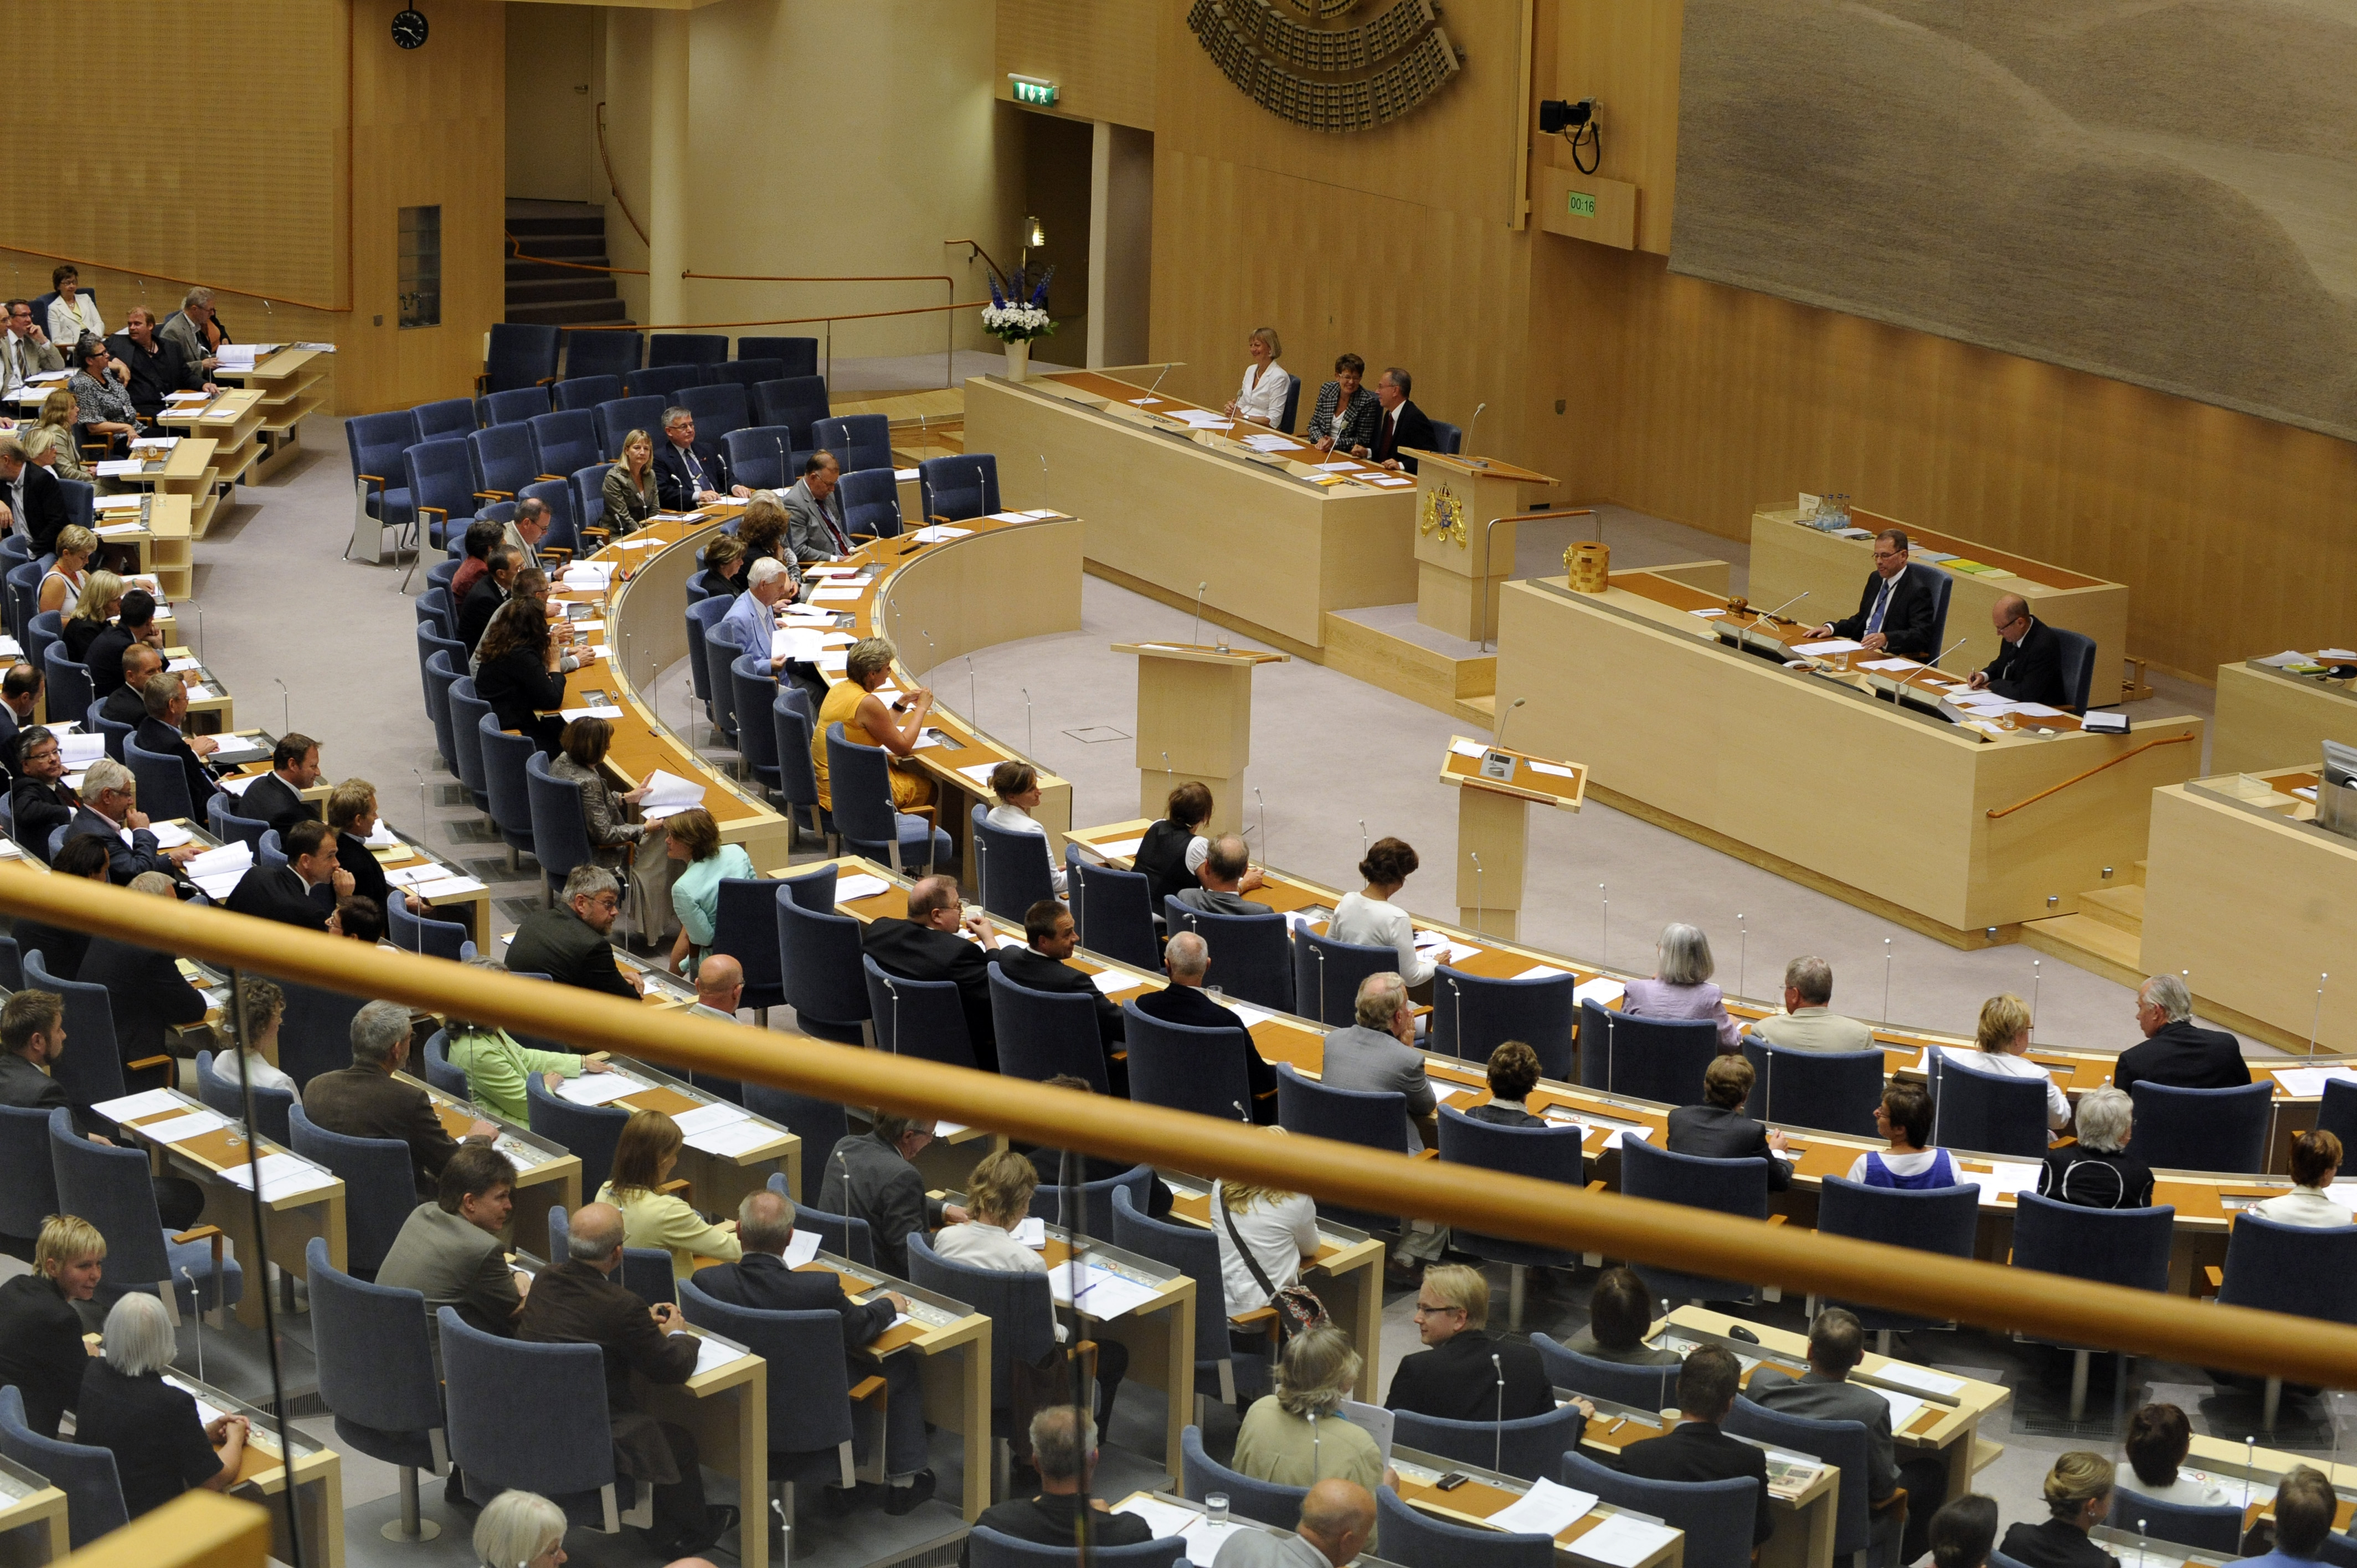 Kristdemokraterna, Alliansen, Moderaterna, Göran Thingwall, Göran Hägglund, Fredrik Reinfeldt, Politisk vilde, Riksdagsvalet 2010